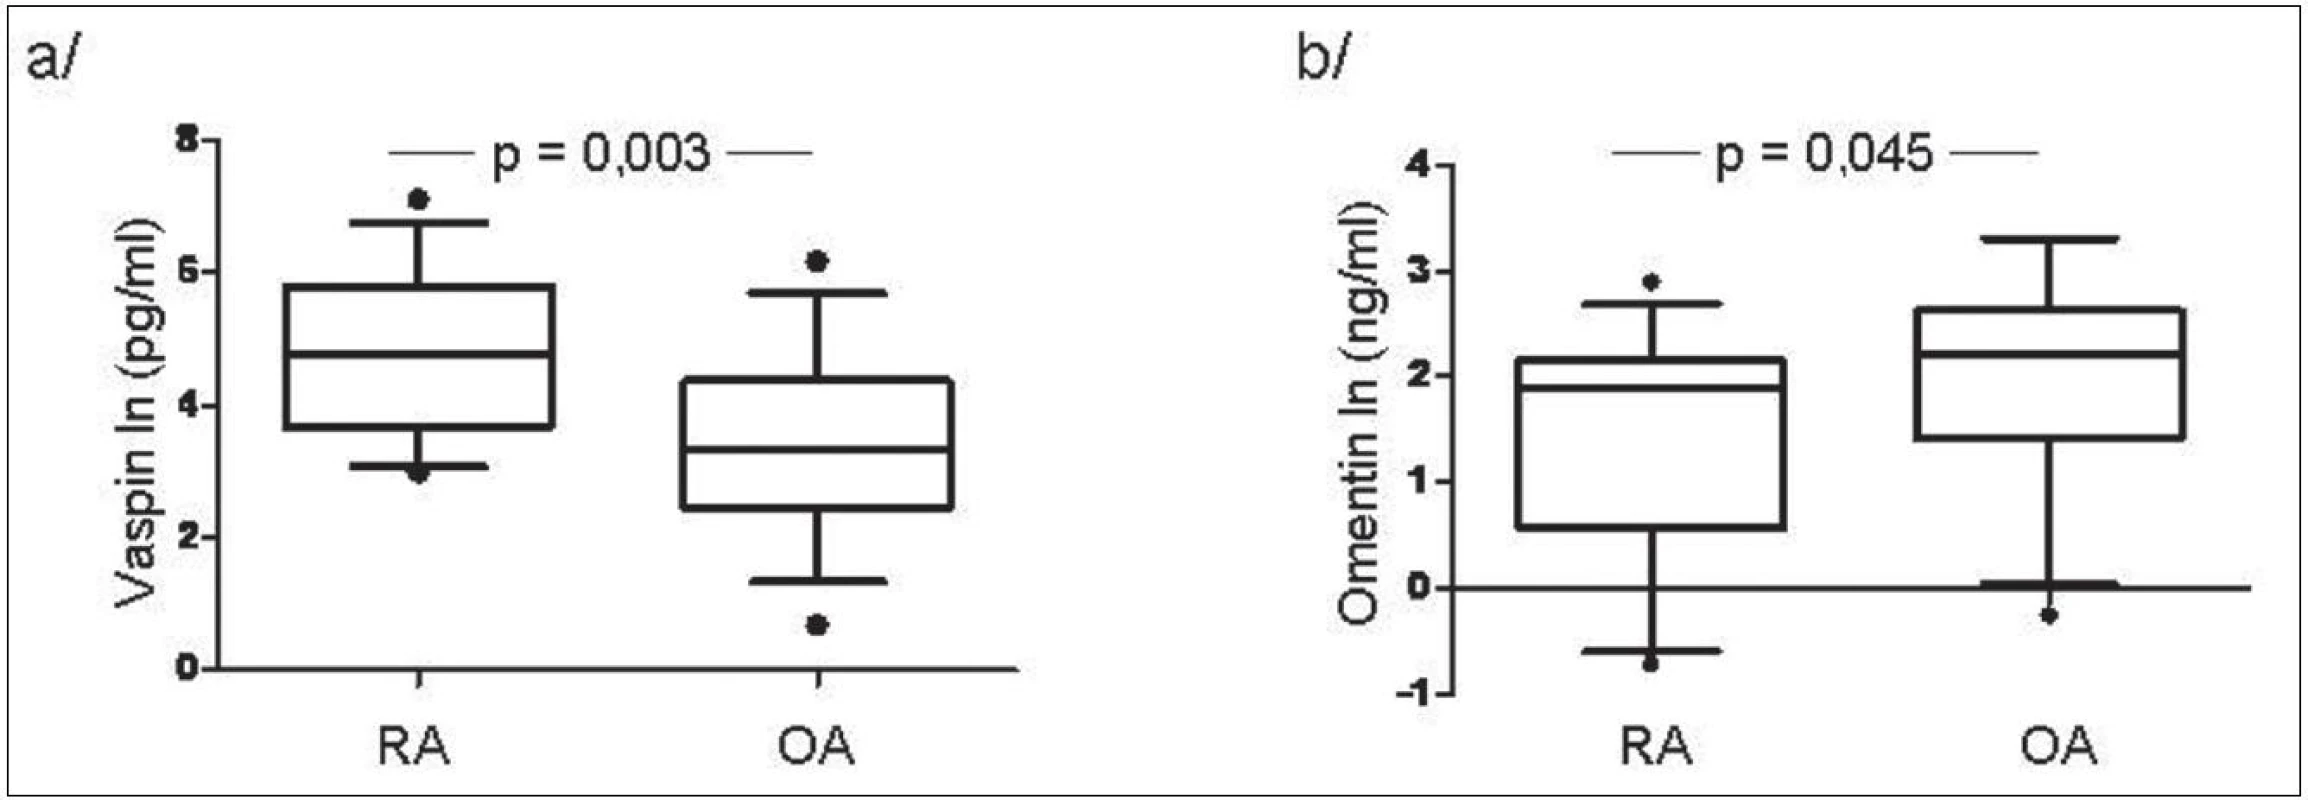 Hladiny vaspinu (a) a omentinu (b) v synoviální tekutině u pacientů s RA a OA.